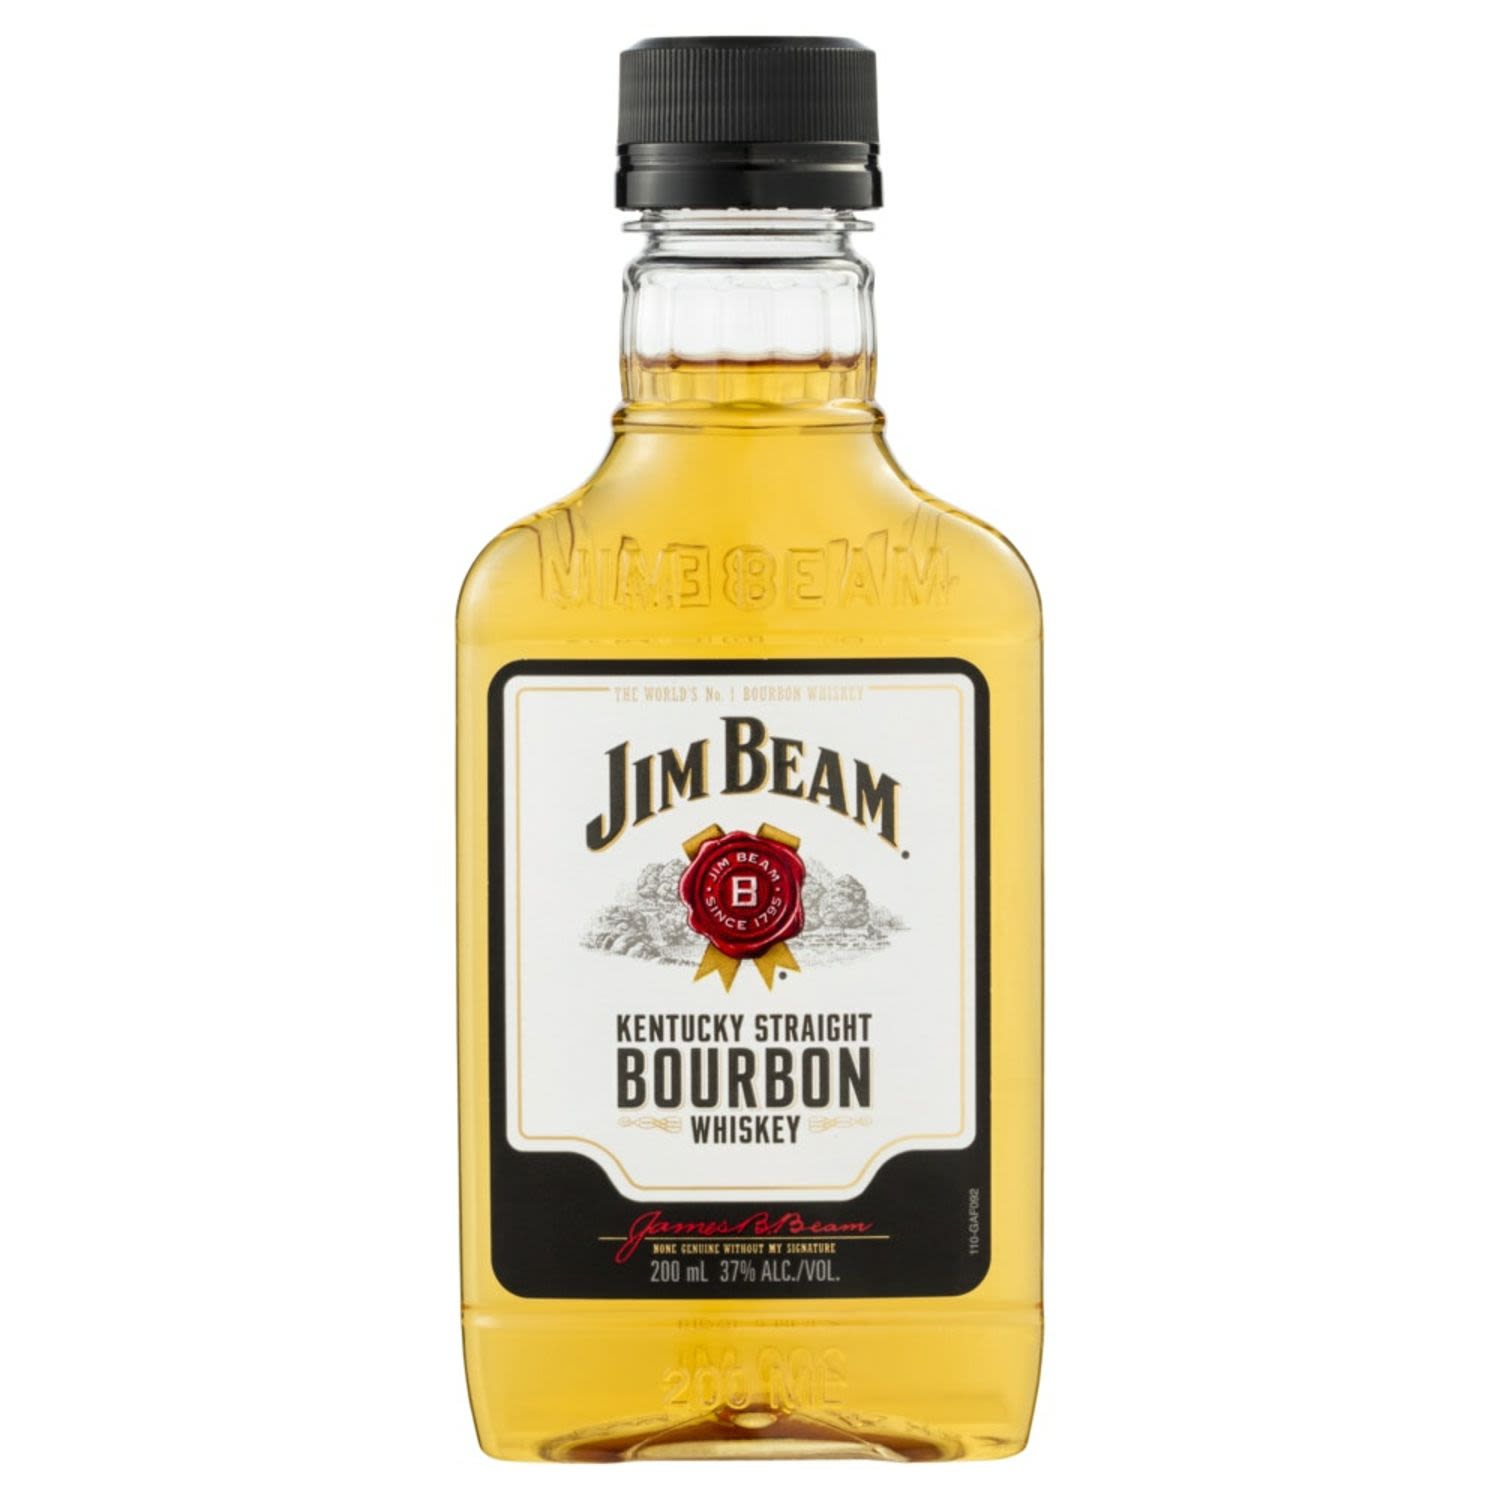 Jim Beam White Label Plastic 200mL Bottle